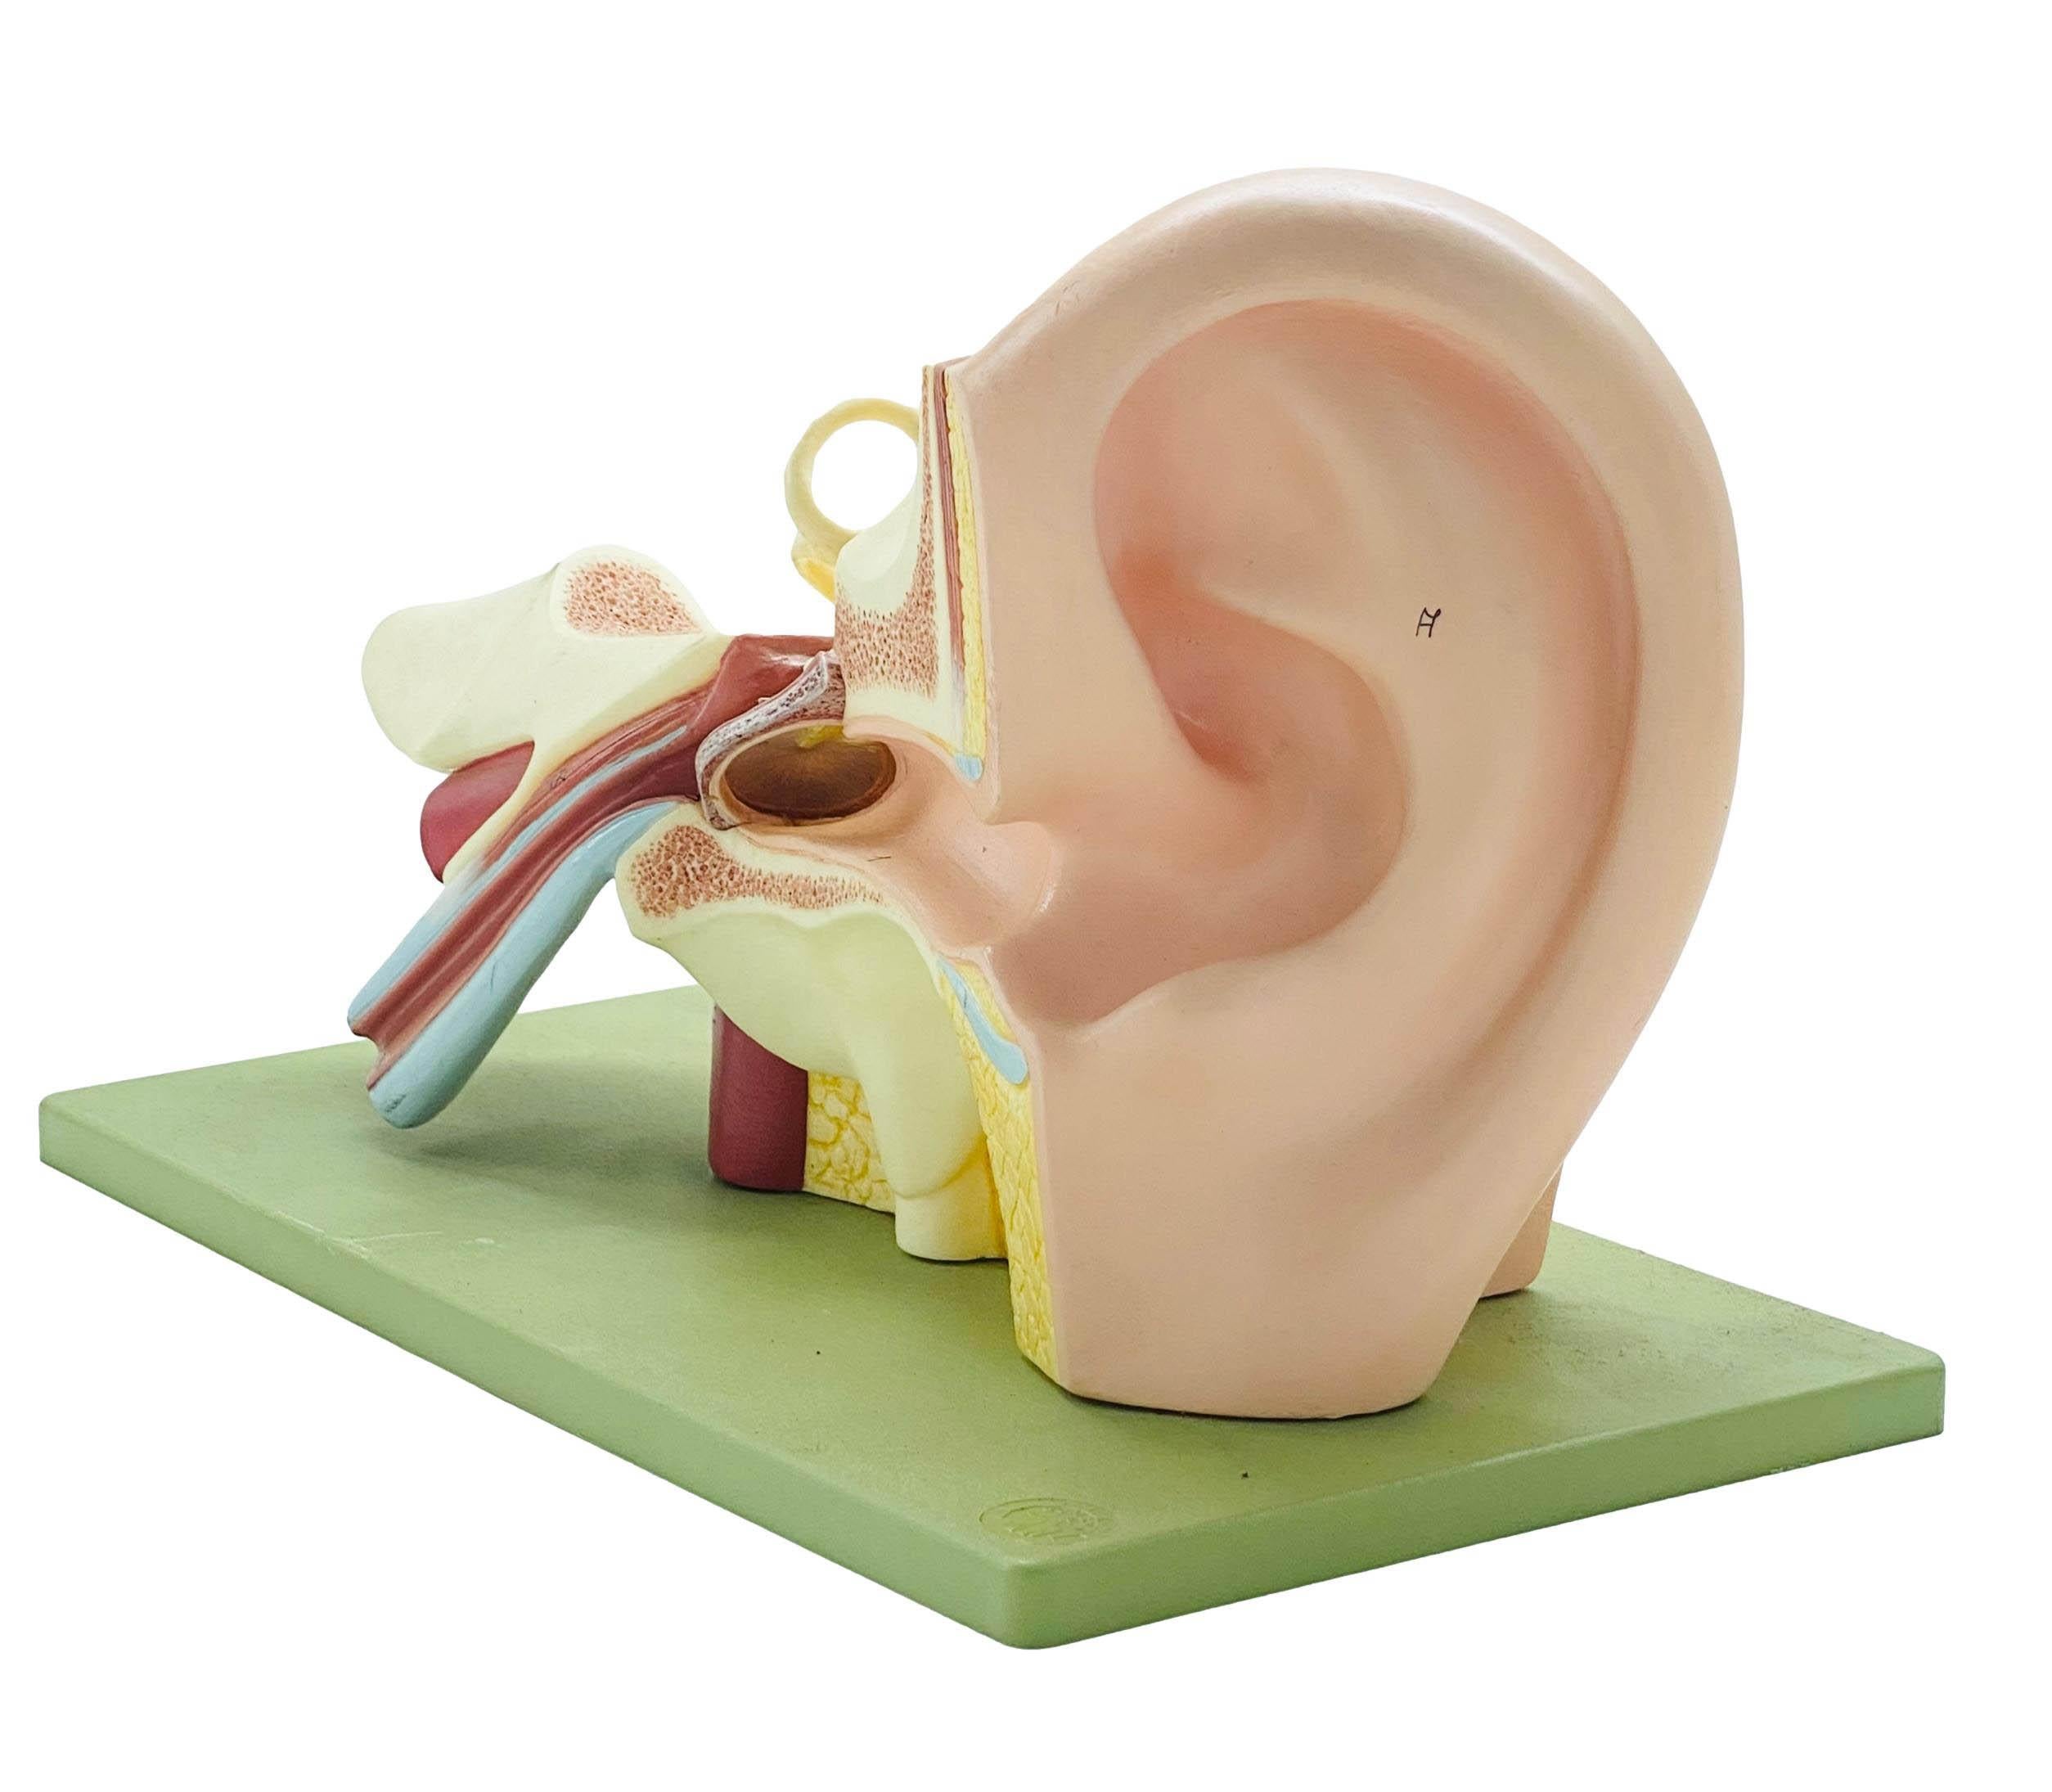 Modèle didactique de l'oreille humaine, materiale plastico, fabriqué dans les années 1950 par Somso, une entreprise allemande active depuis la seconde moitié du XIXe siècle, connue pour son excellence dans le développement de modèles scientifiques,